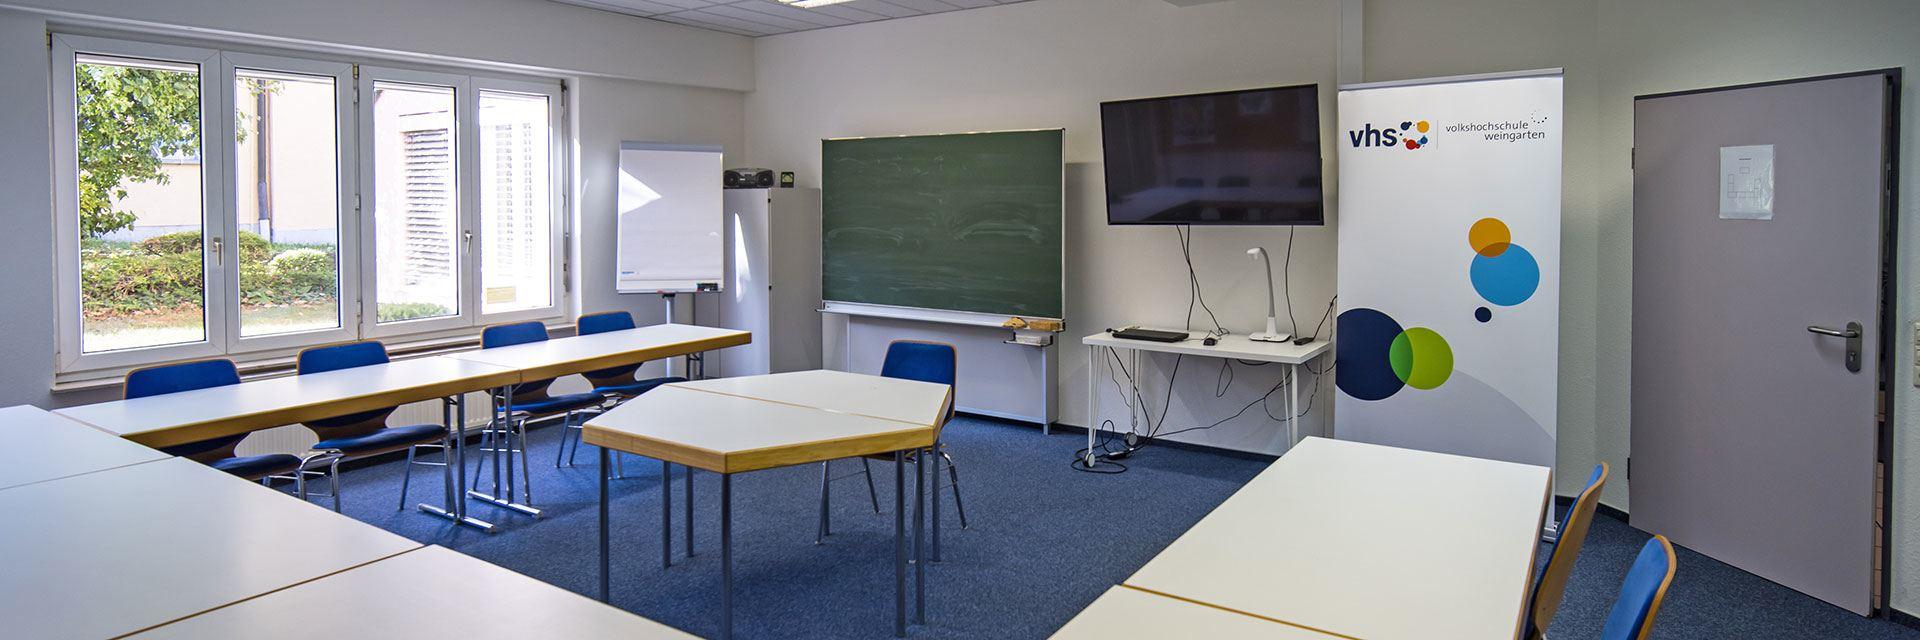 Bild zeigt einen Schulungsraum der Volkshochschule Weingarten